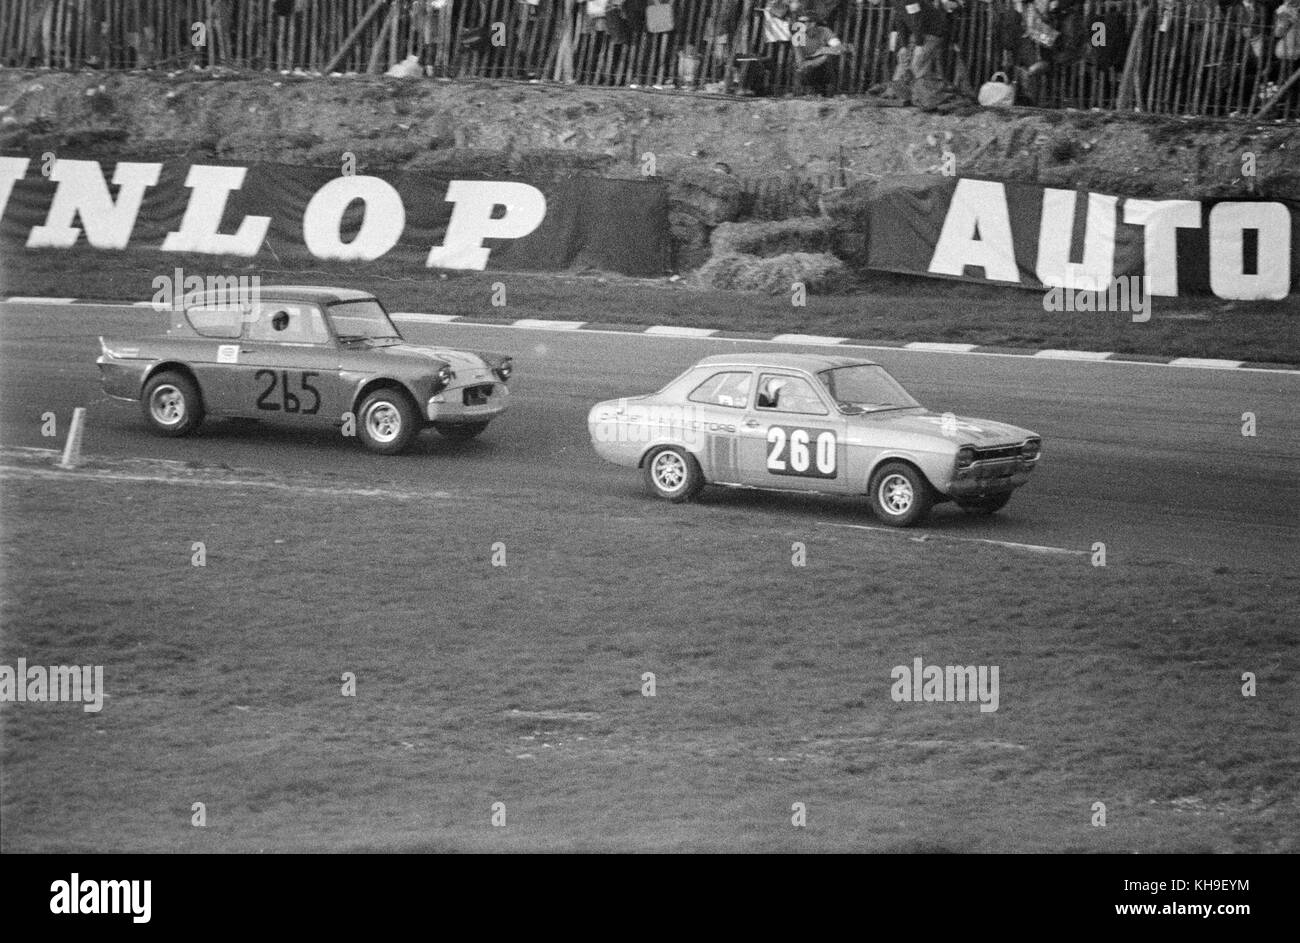 Une marque Ford Escort, un numéro de course 260, parrainé par terre Dagenham Motors, conduit une Ford Anglia, numéro 265, lors d'une course sur le circuit de Brands Hatch en Angleterre en 1968. Banque D'Images